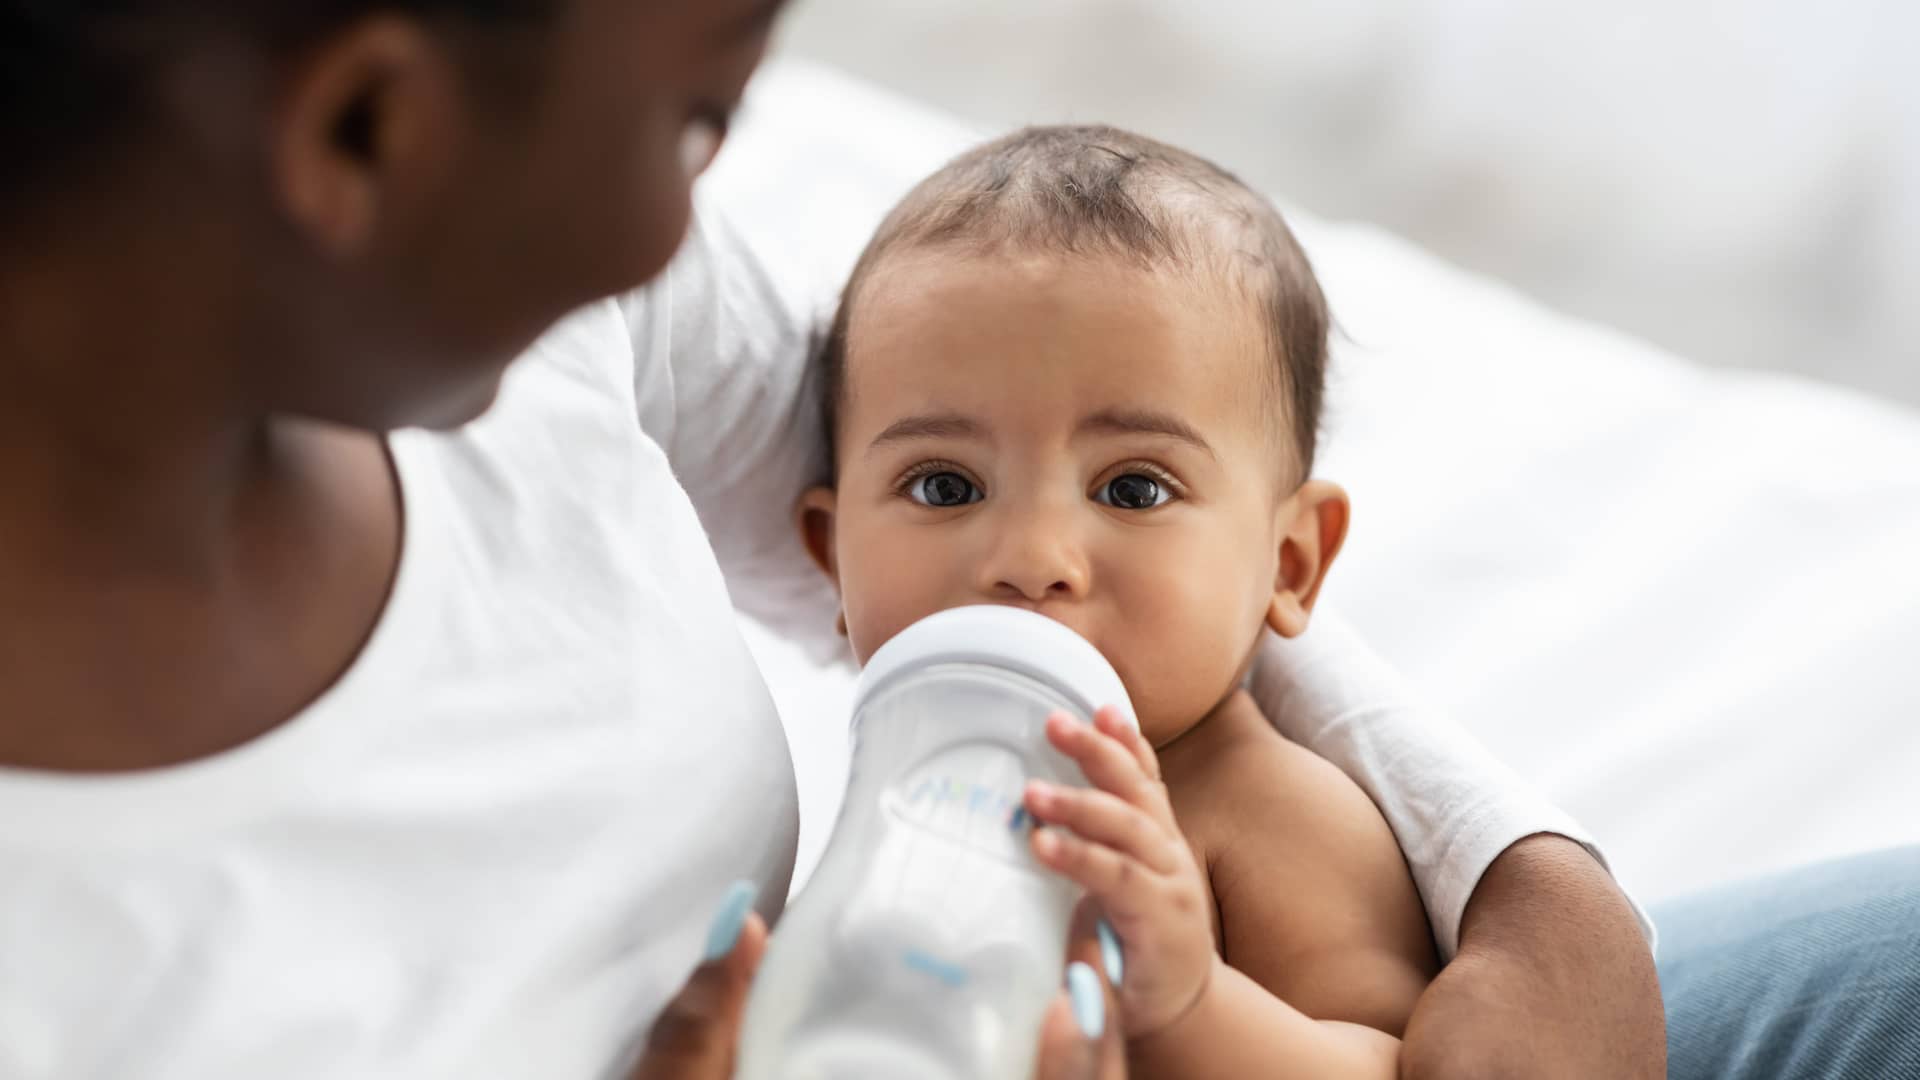 Alimentación del bebé de 4 meses: solamente puede tomar su leche